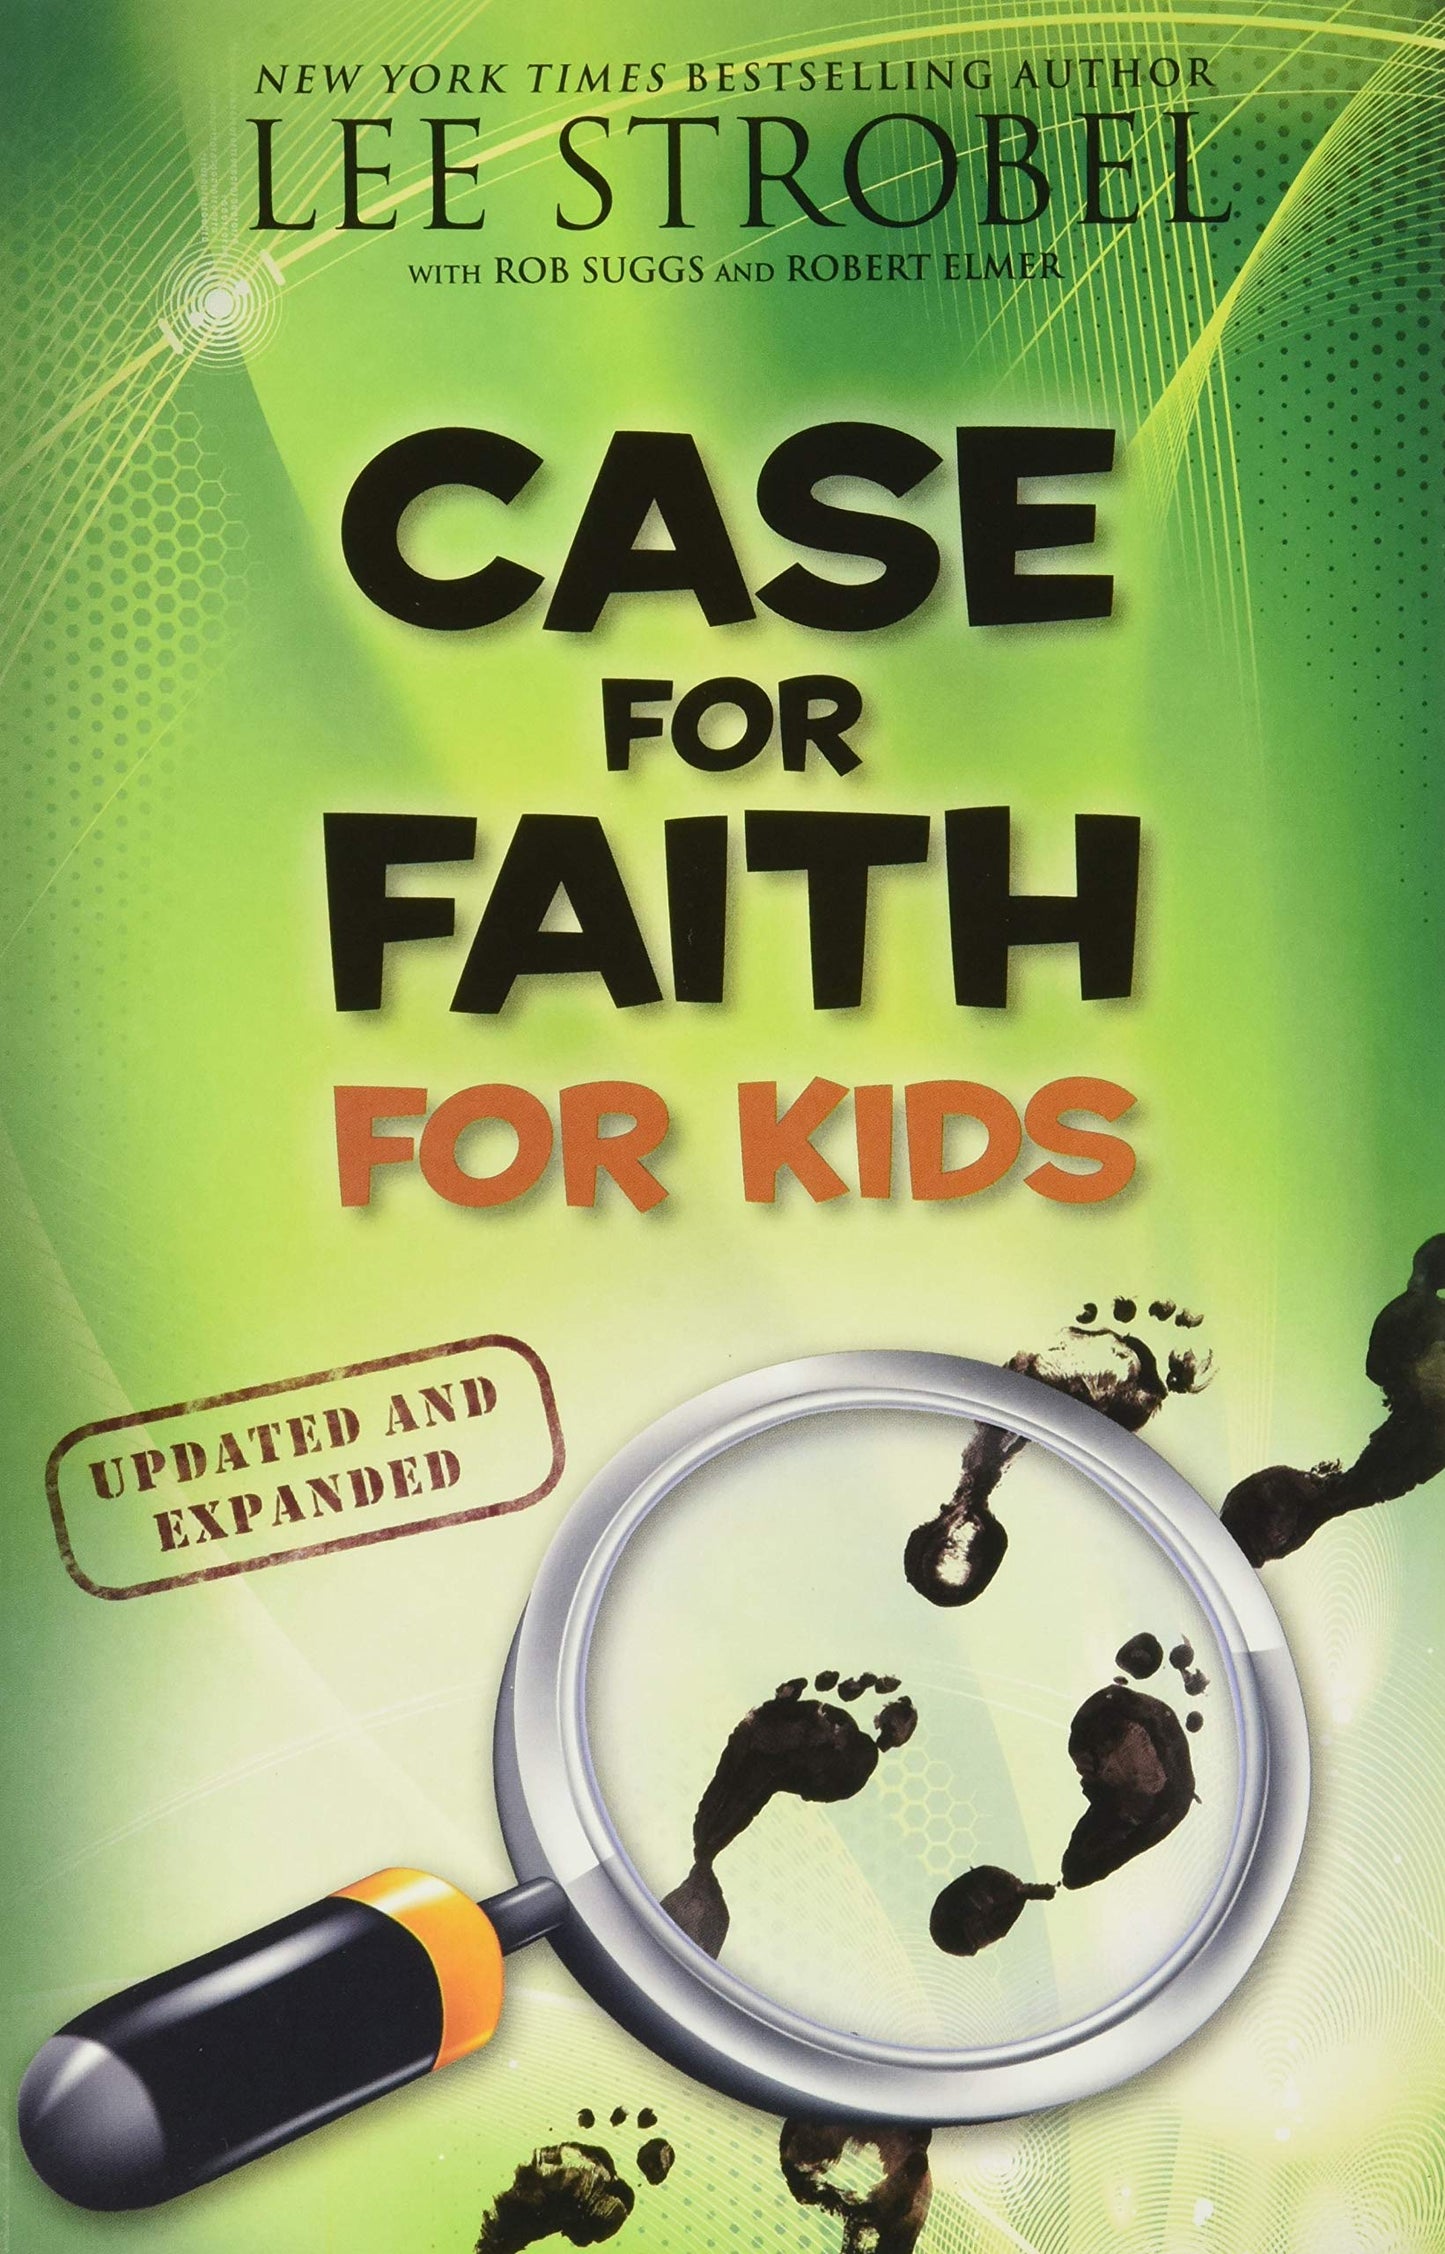 Case for Faith for Kids by Lee Strobel